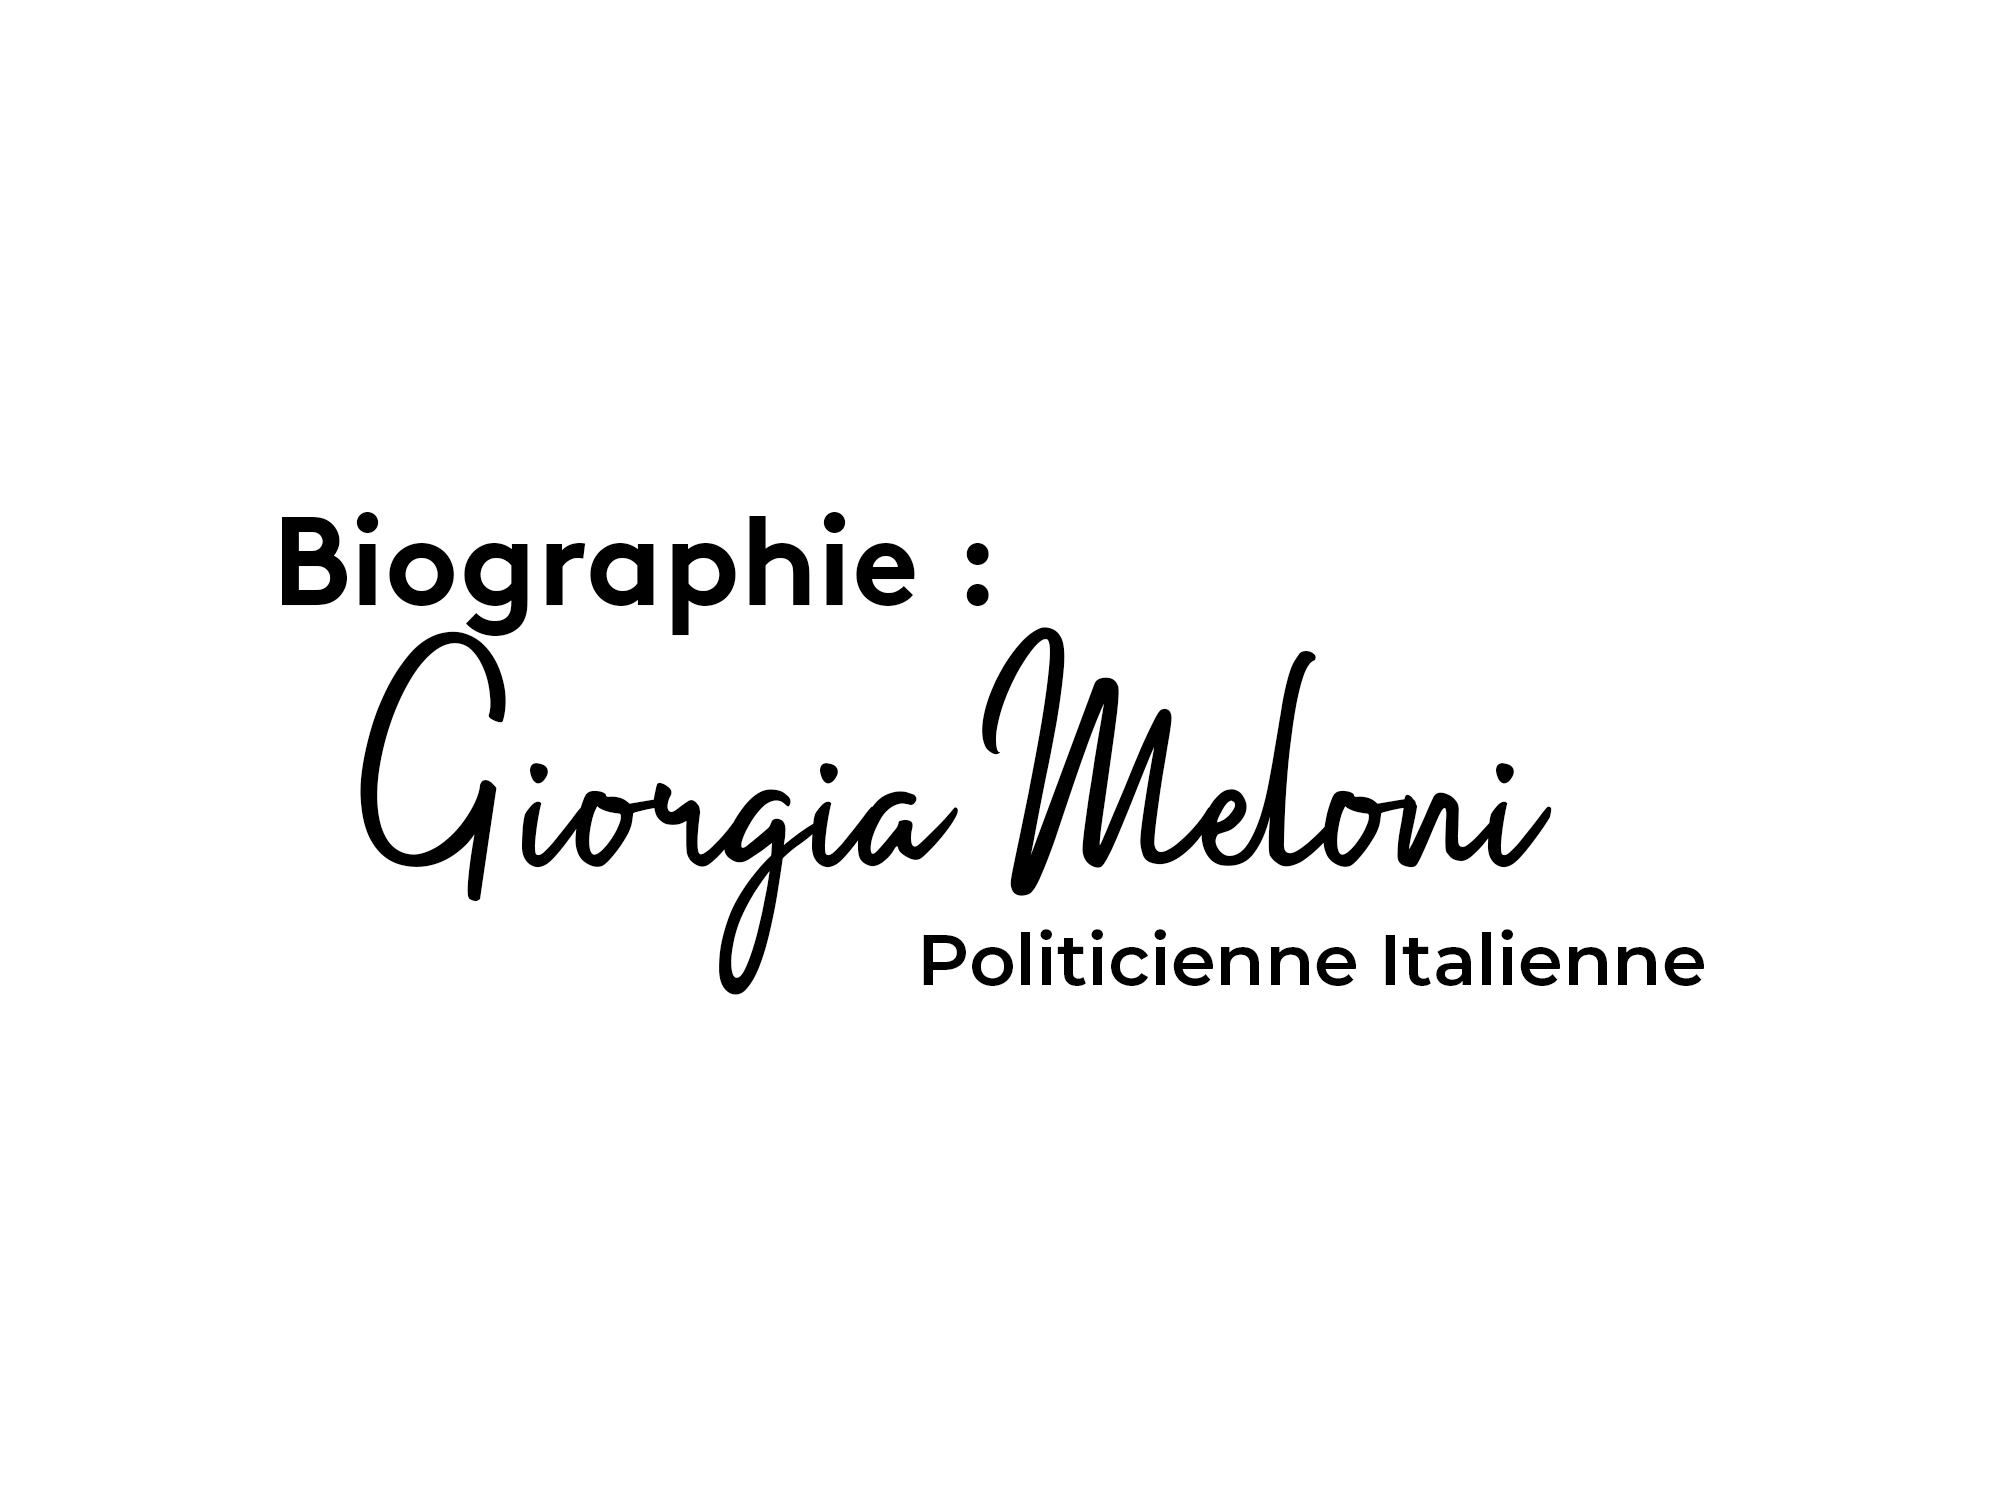 Biographie Giorgia Meloni